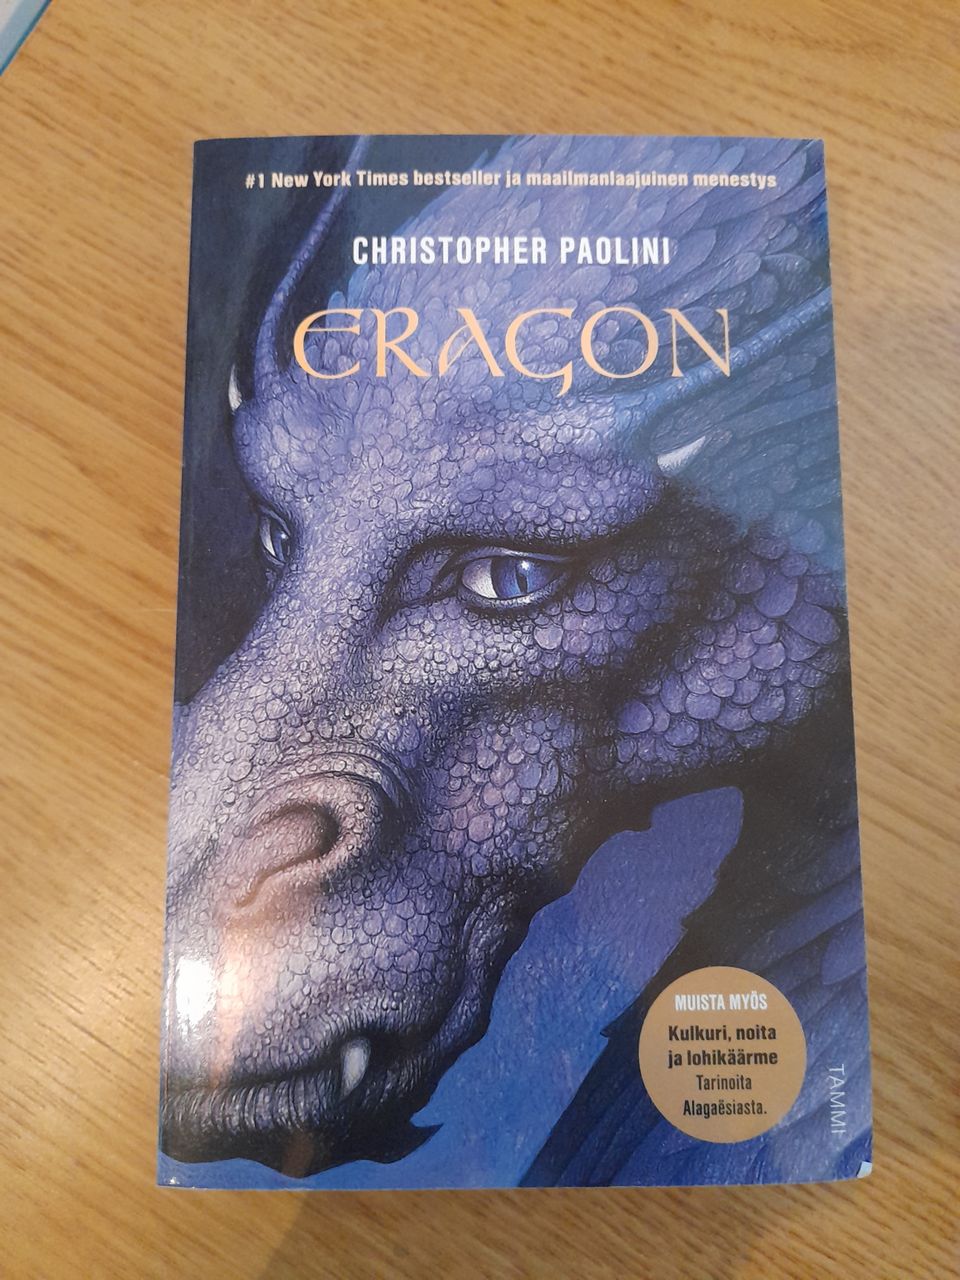 Eragon - Christopher Paolini